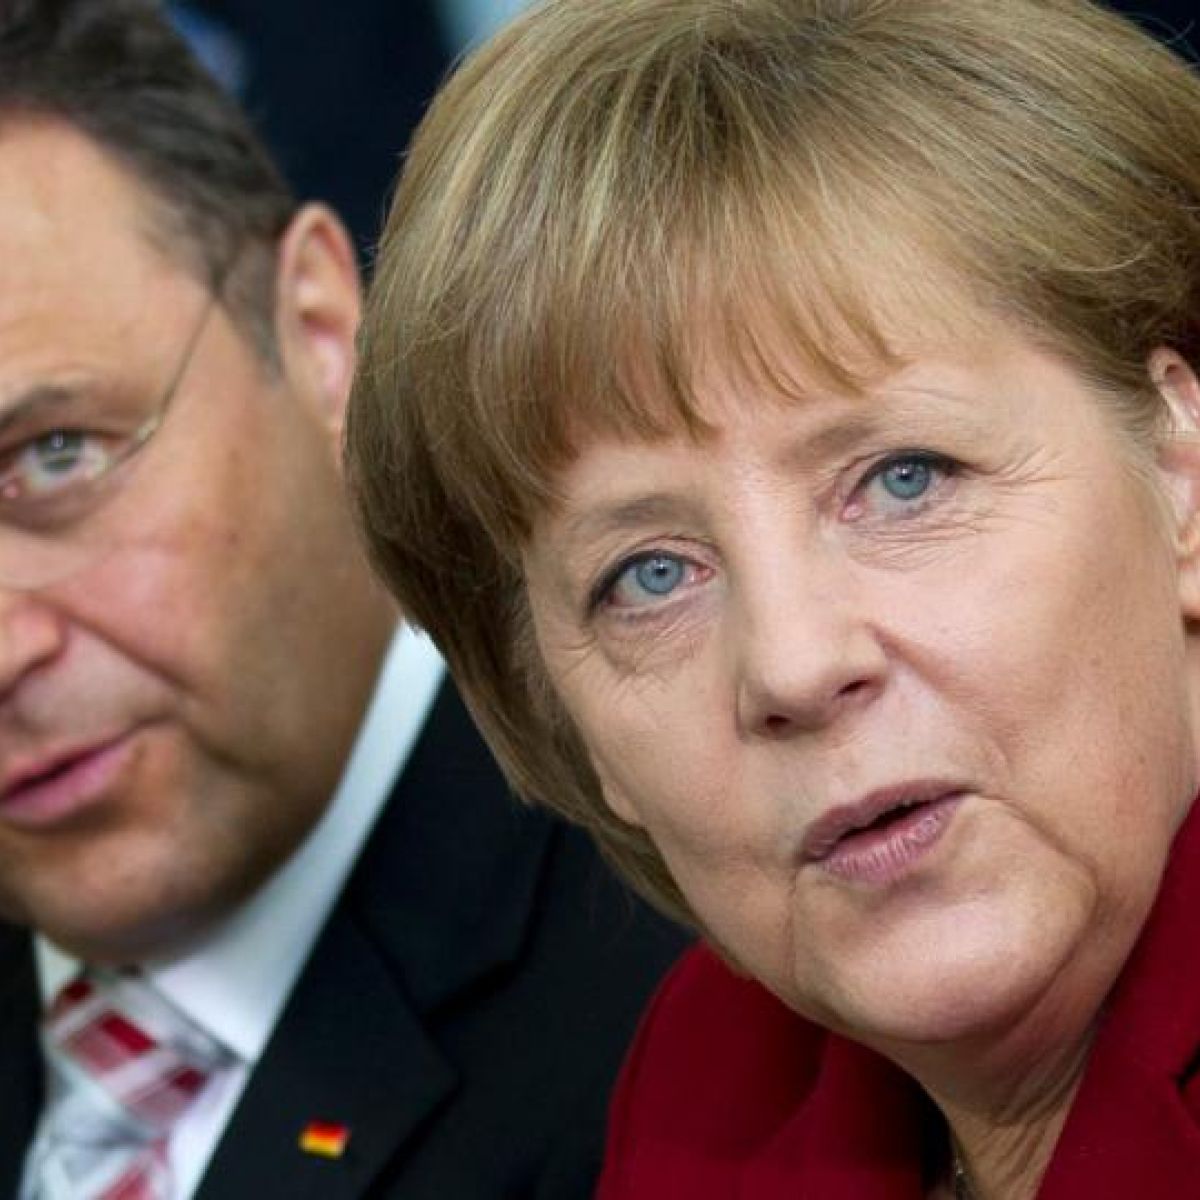 Porn merkel Angela Merkel